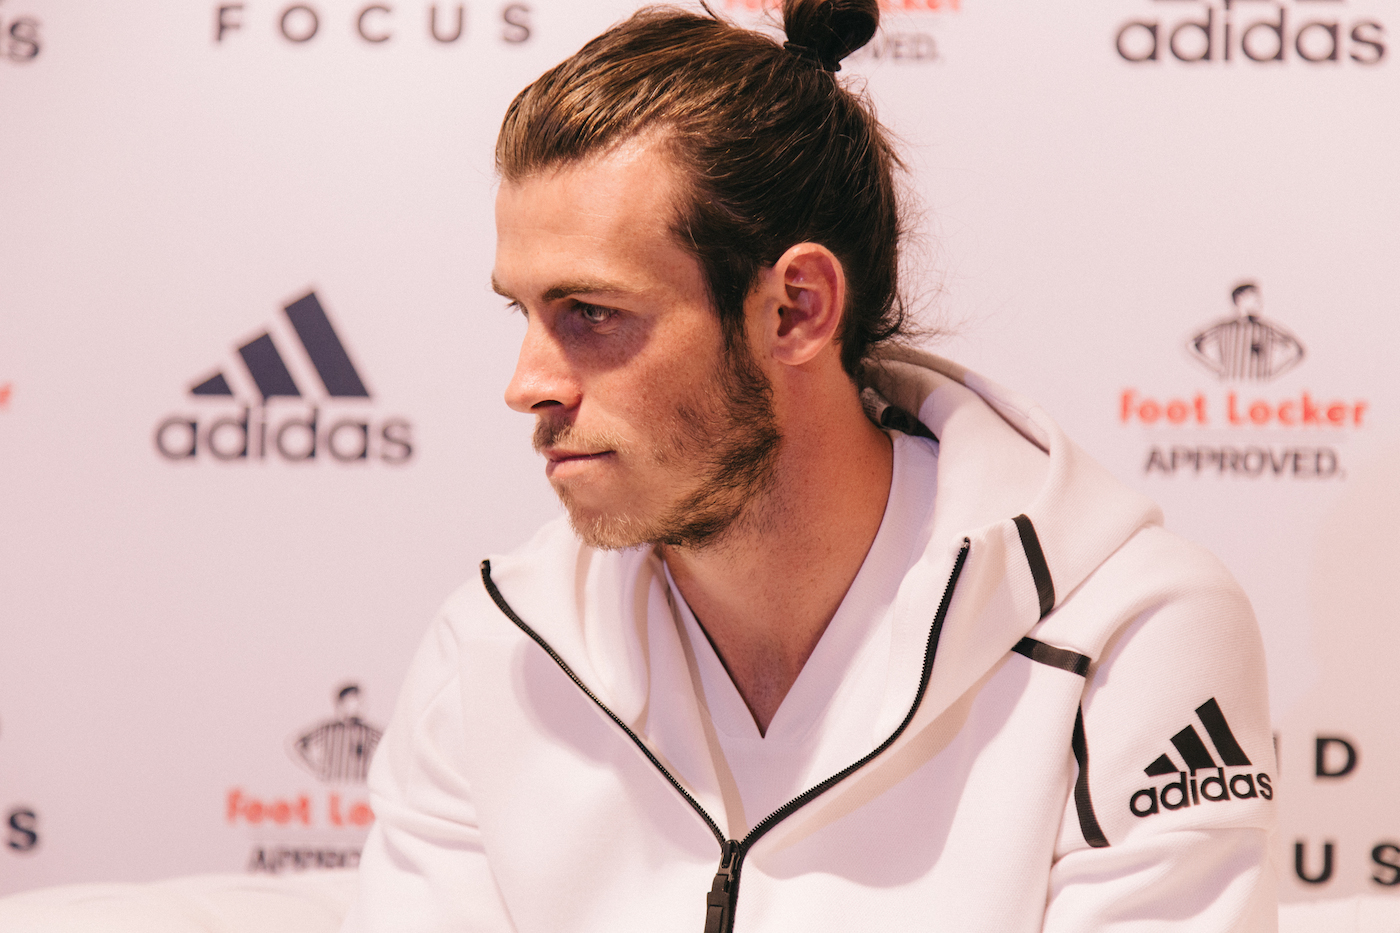 adidas Foot Locker presentan con Gareth Bale la nueva sudadera Z.N.E. en Madrid